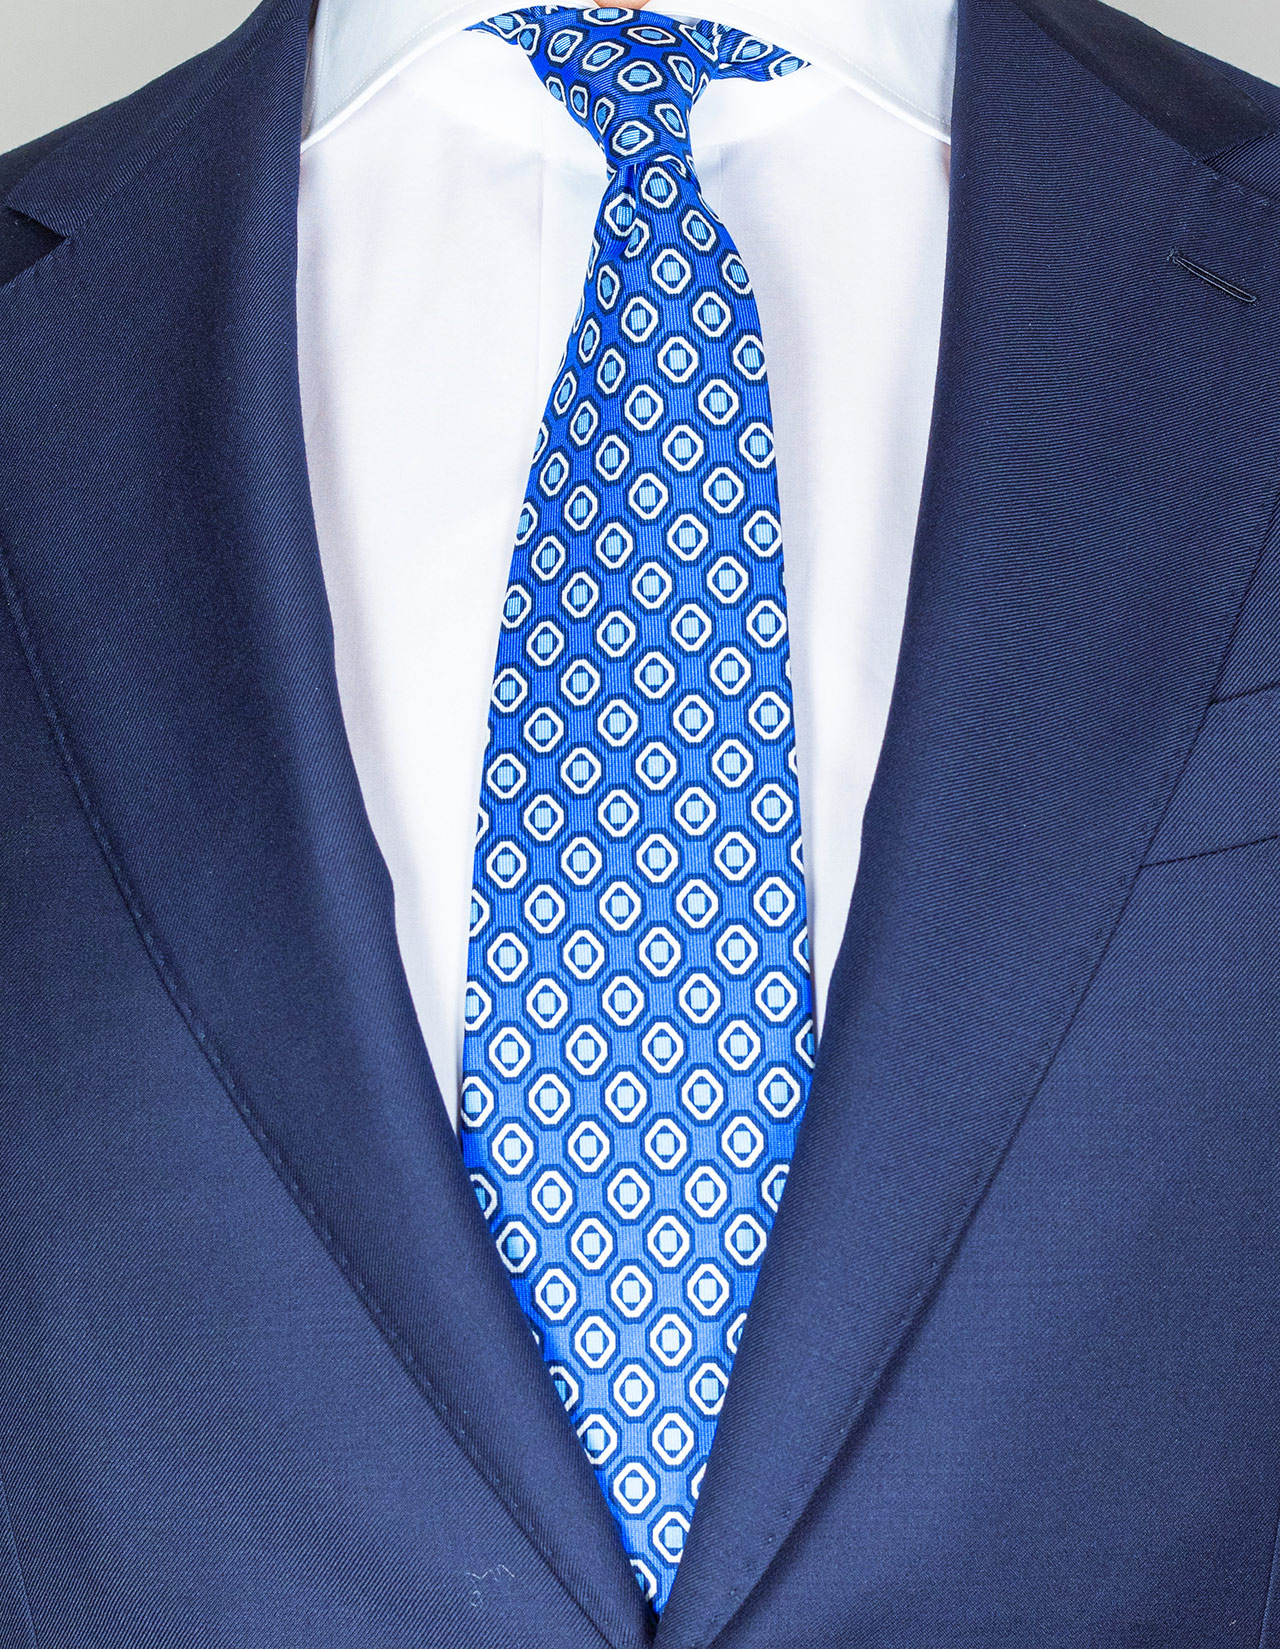 Cesare Attolini Krawatte in blau mit hellblau-weiß-dunkelblauem Muster